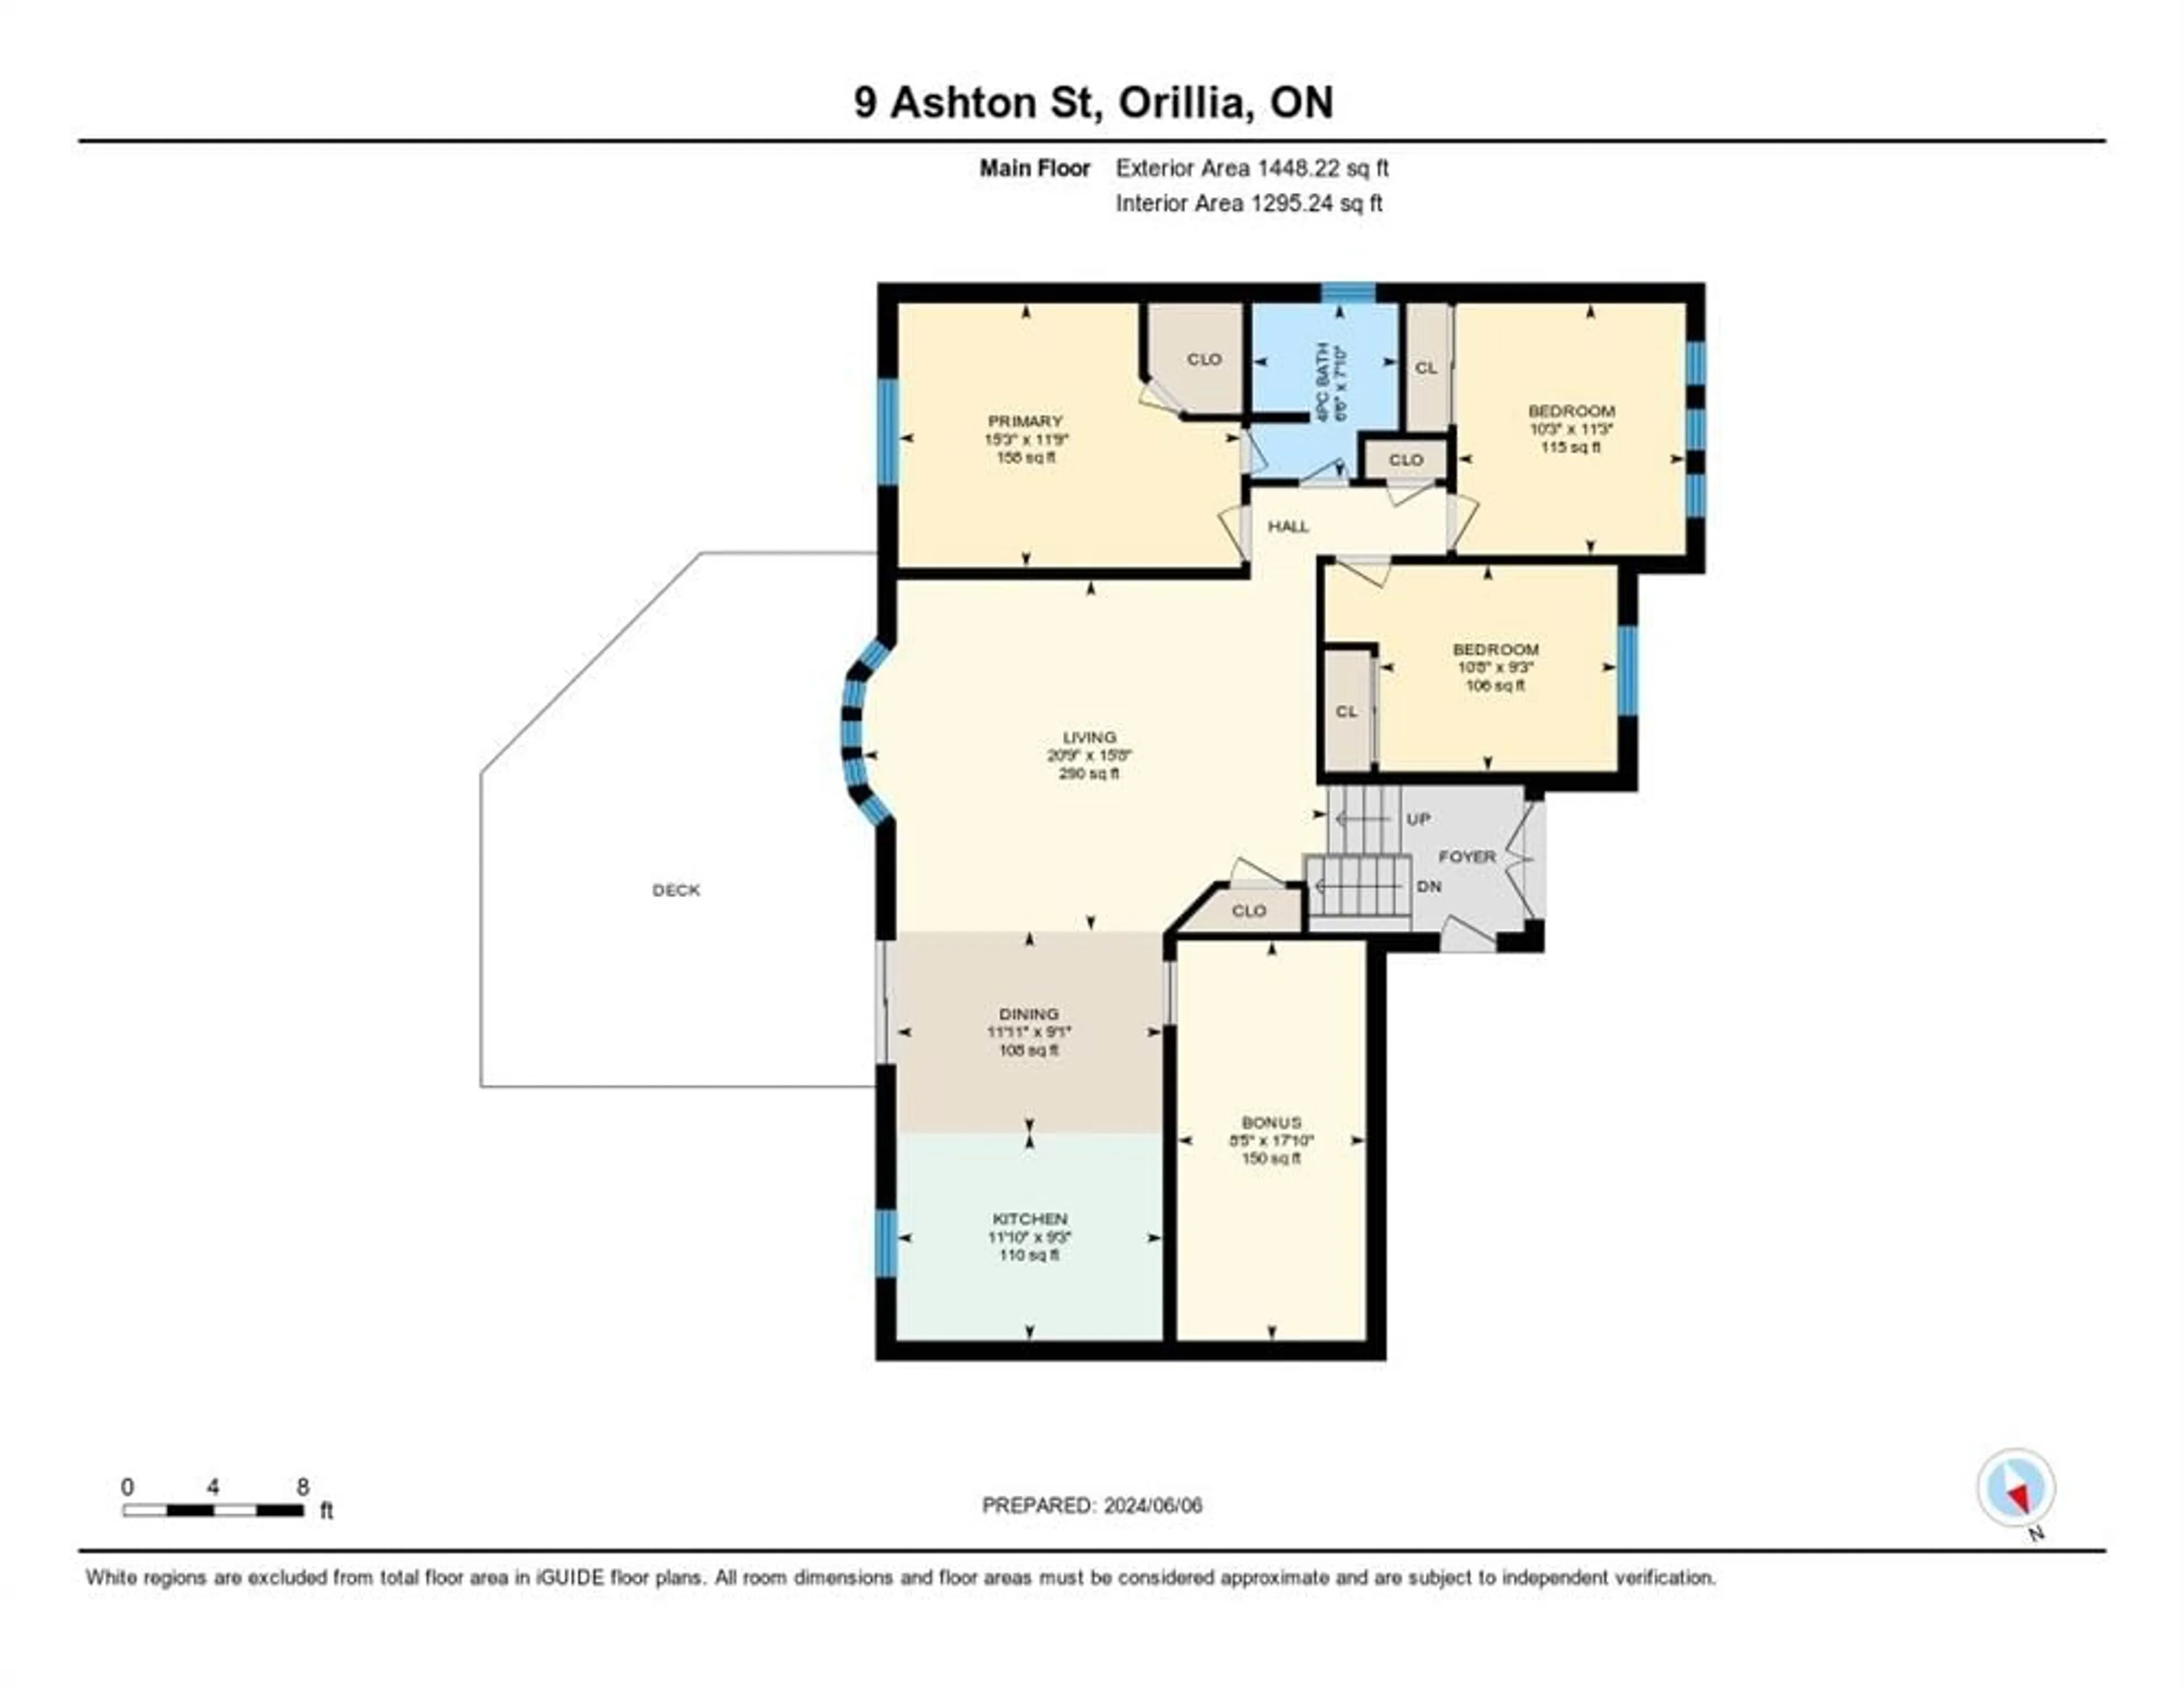 Floor plan for 9 Ashton St, Orillia Ontario L3V 7V5